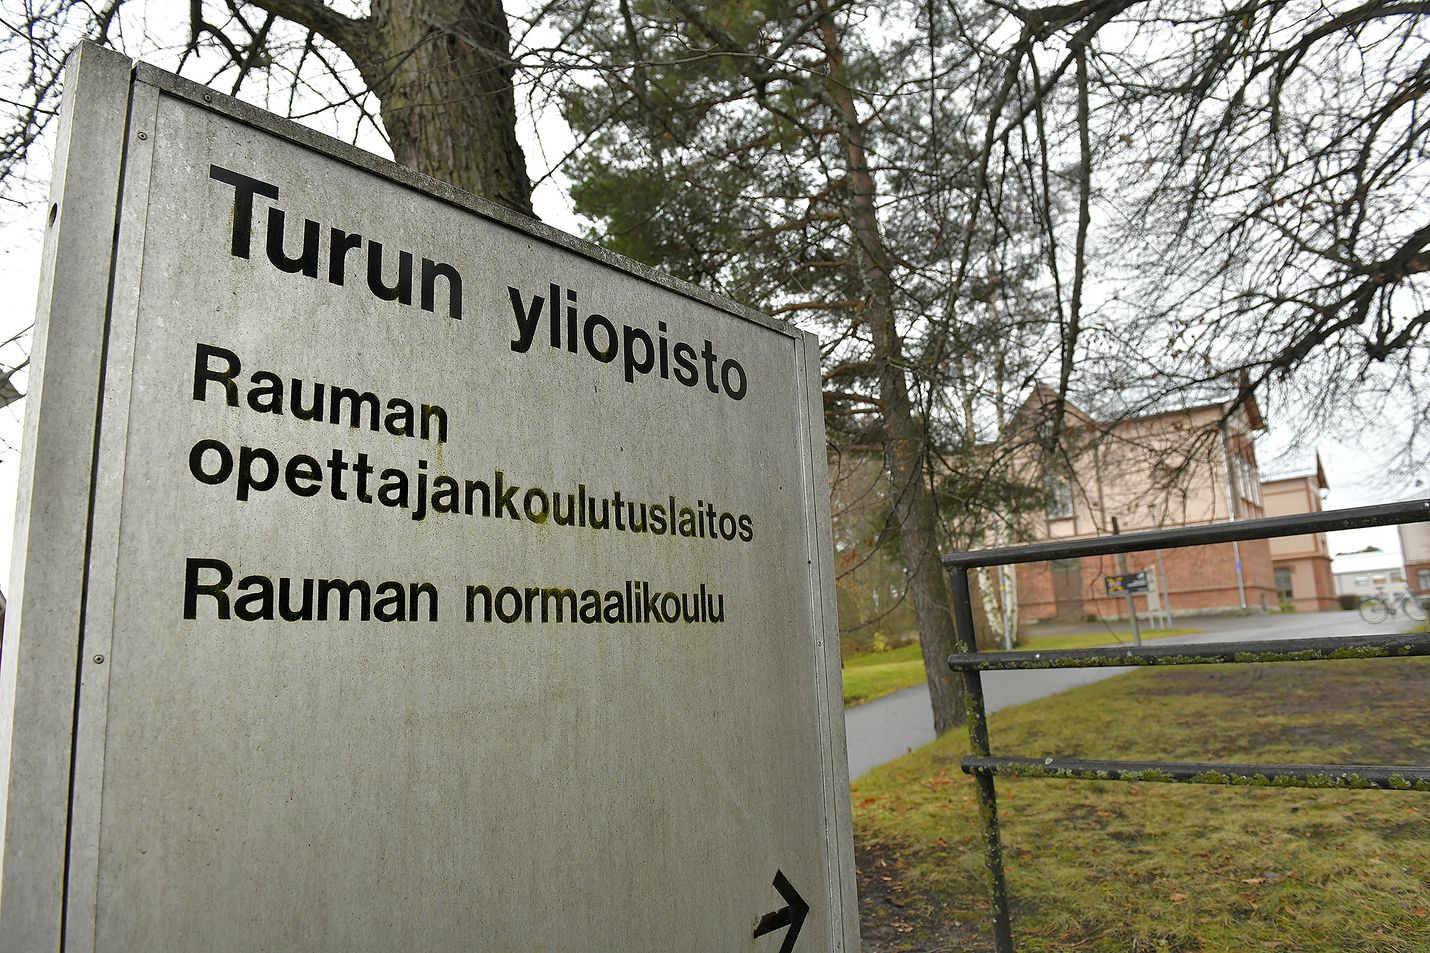 Opettajankoulutuksen jatko on turvattava Raumalla, vaikka se tarkoittaisi kaupungin tukipakettia Turun yliopistolle.